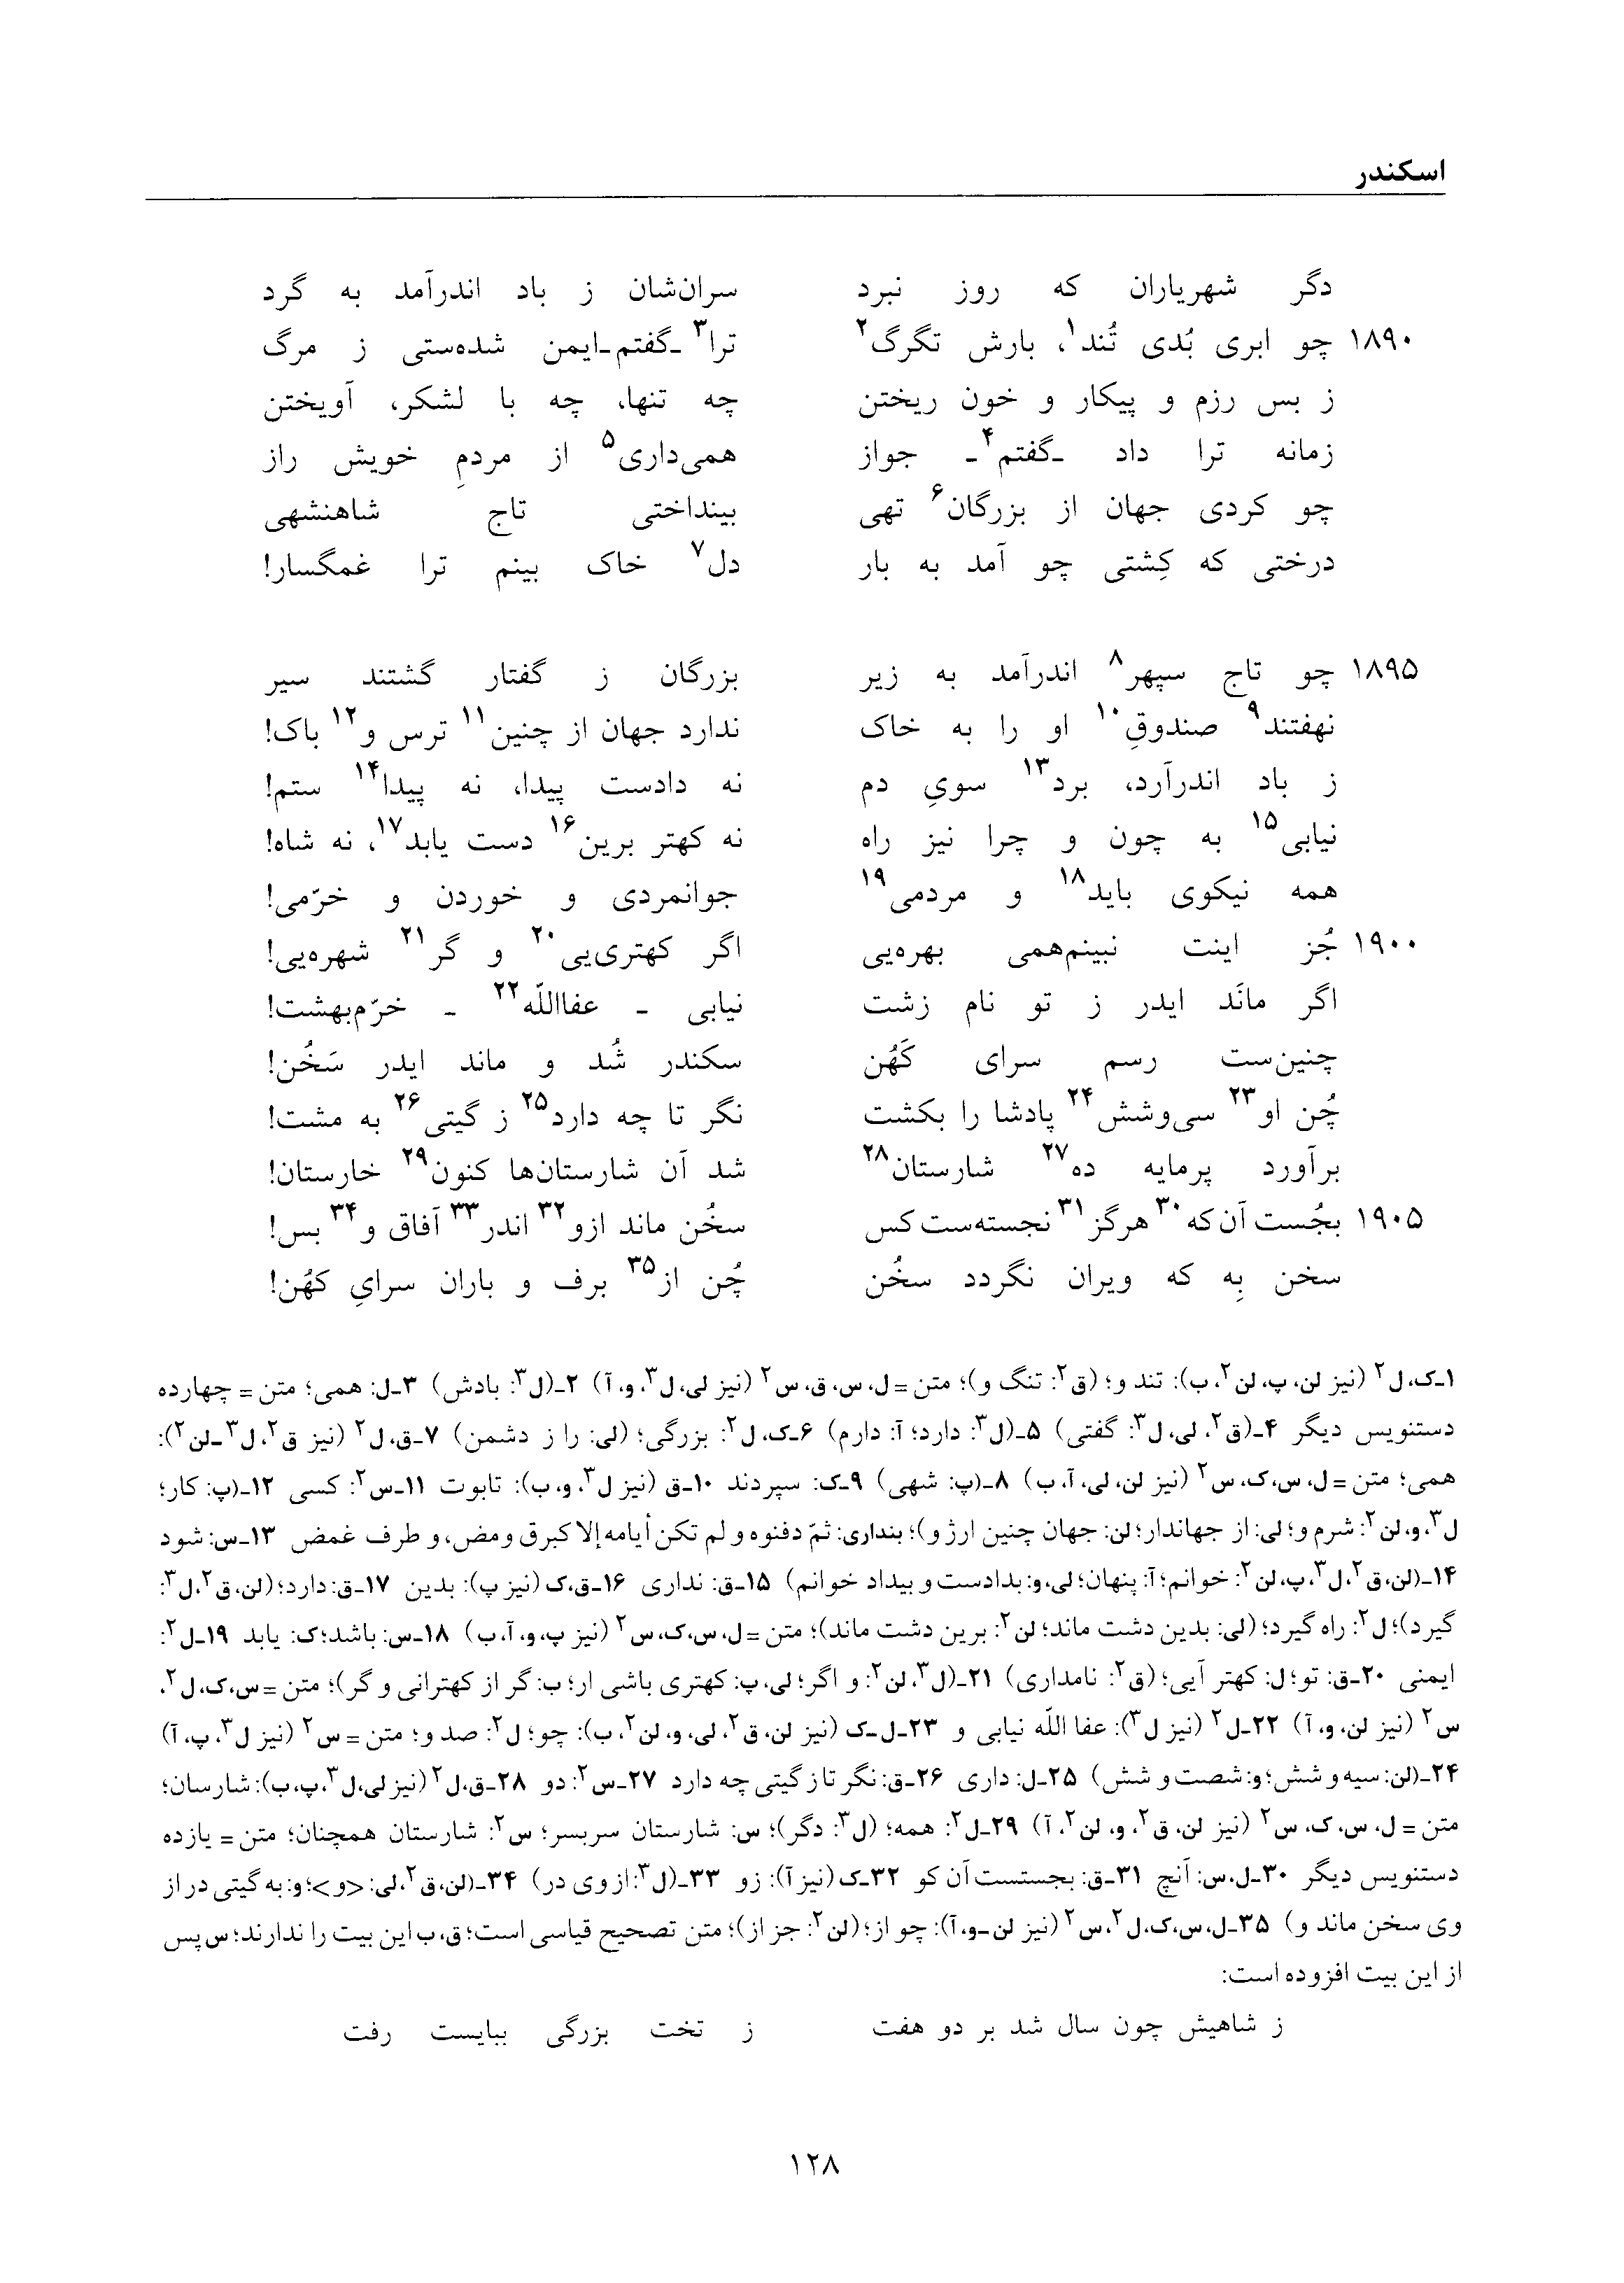 vol. 6, p. 128